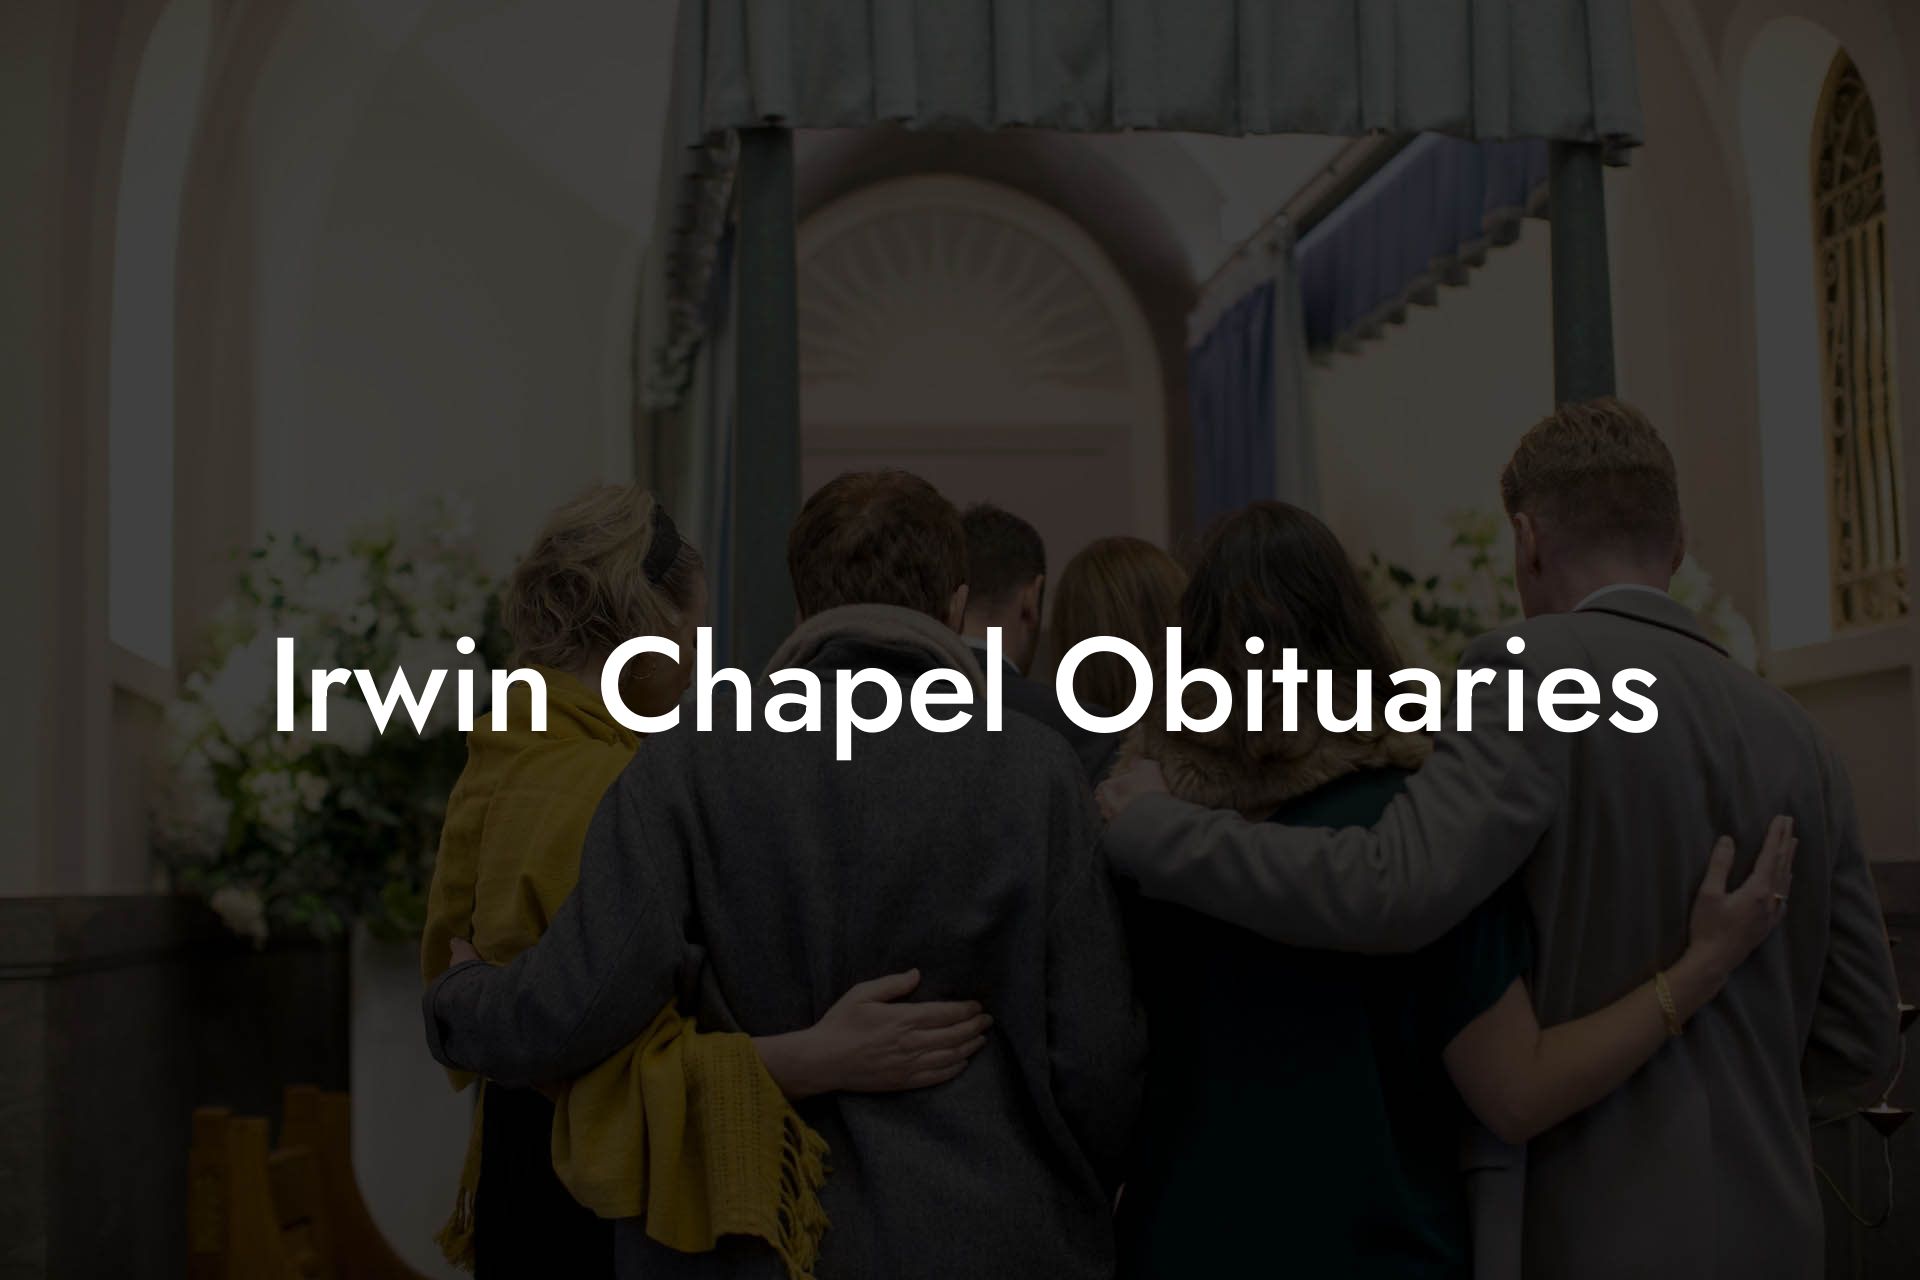 Irwin Chapel Obituaries